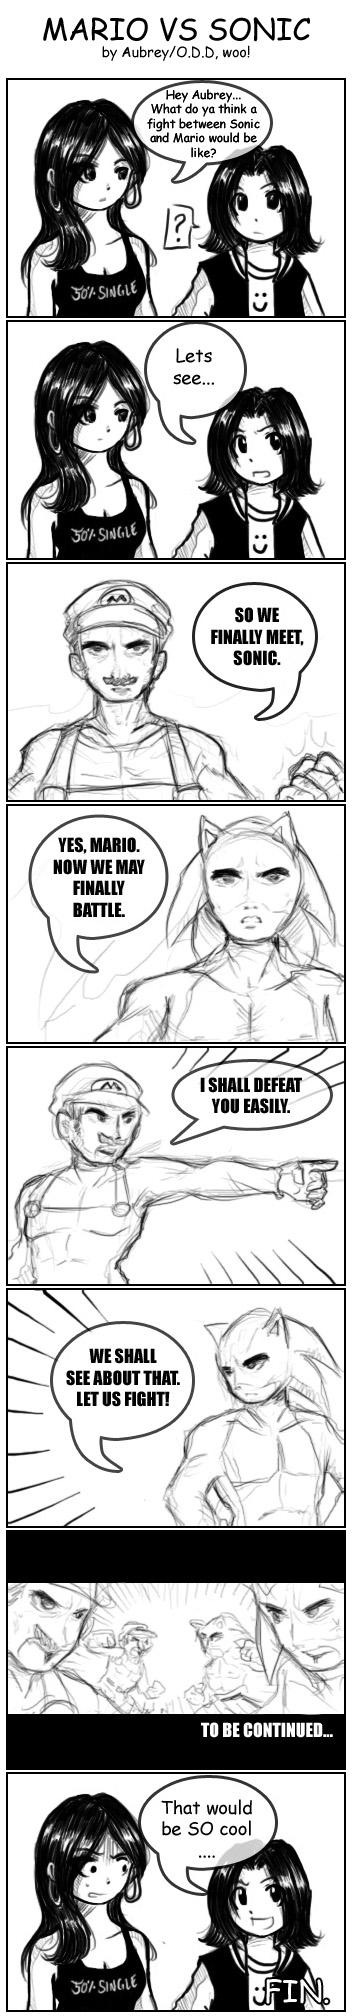 MARIO vs SONIC: The Epic Comic